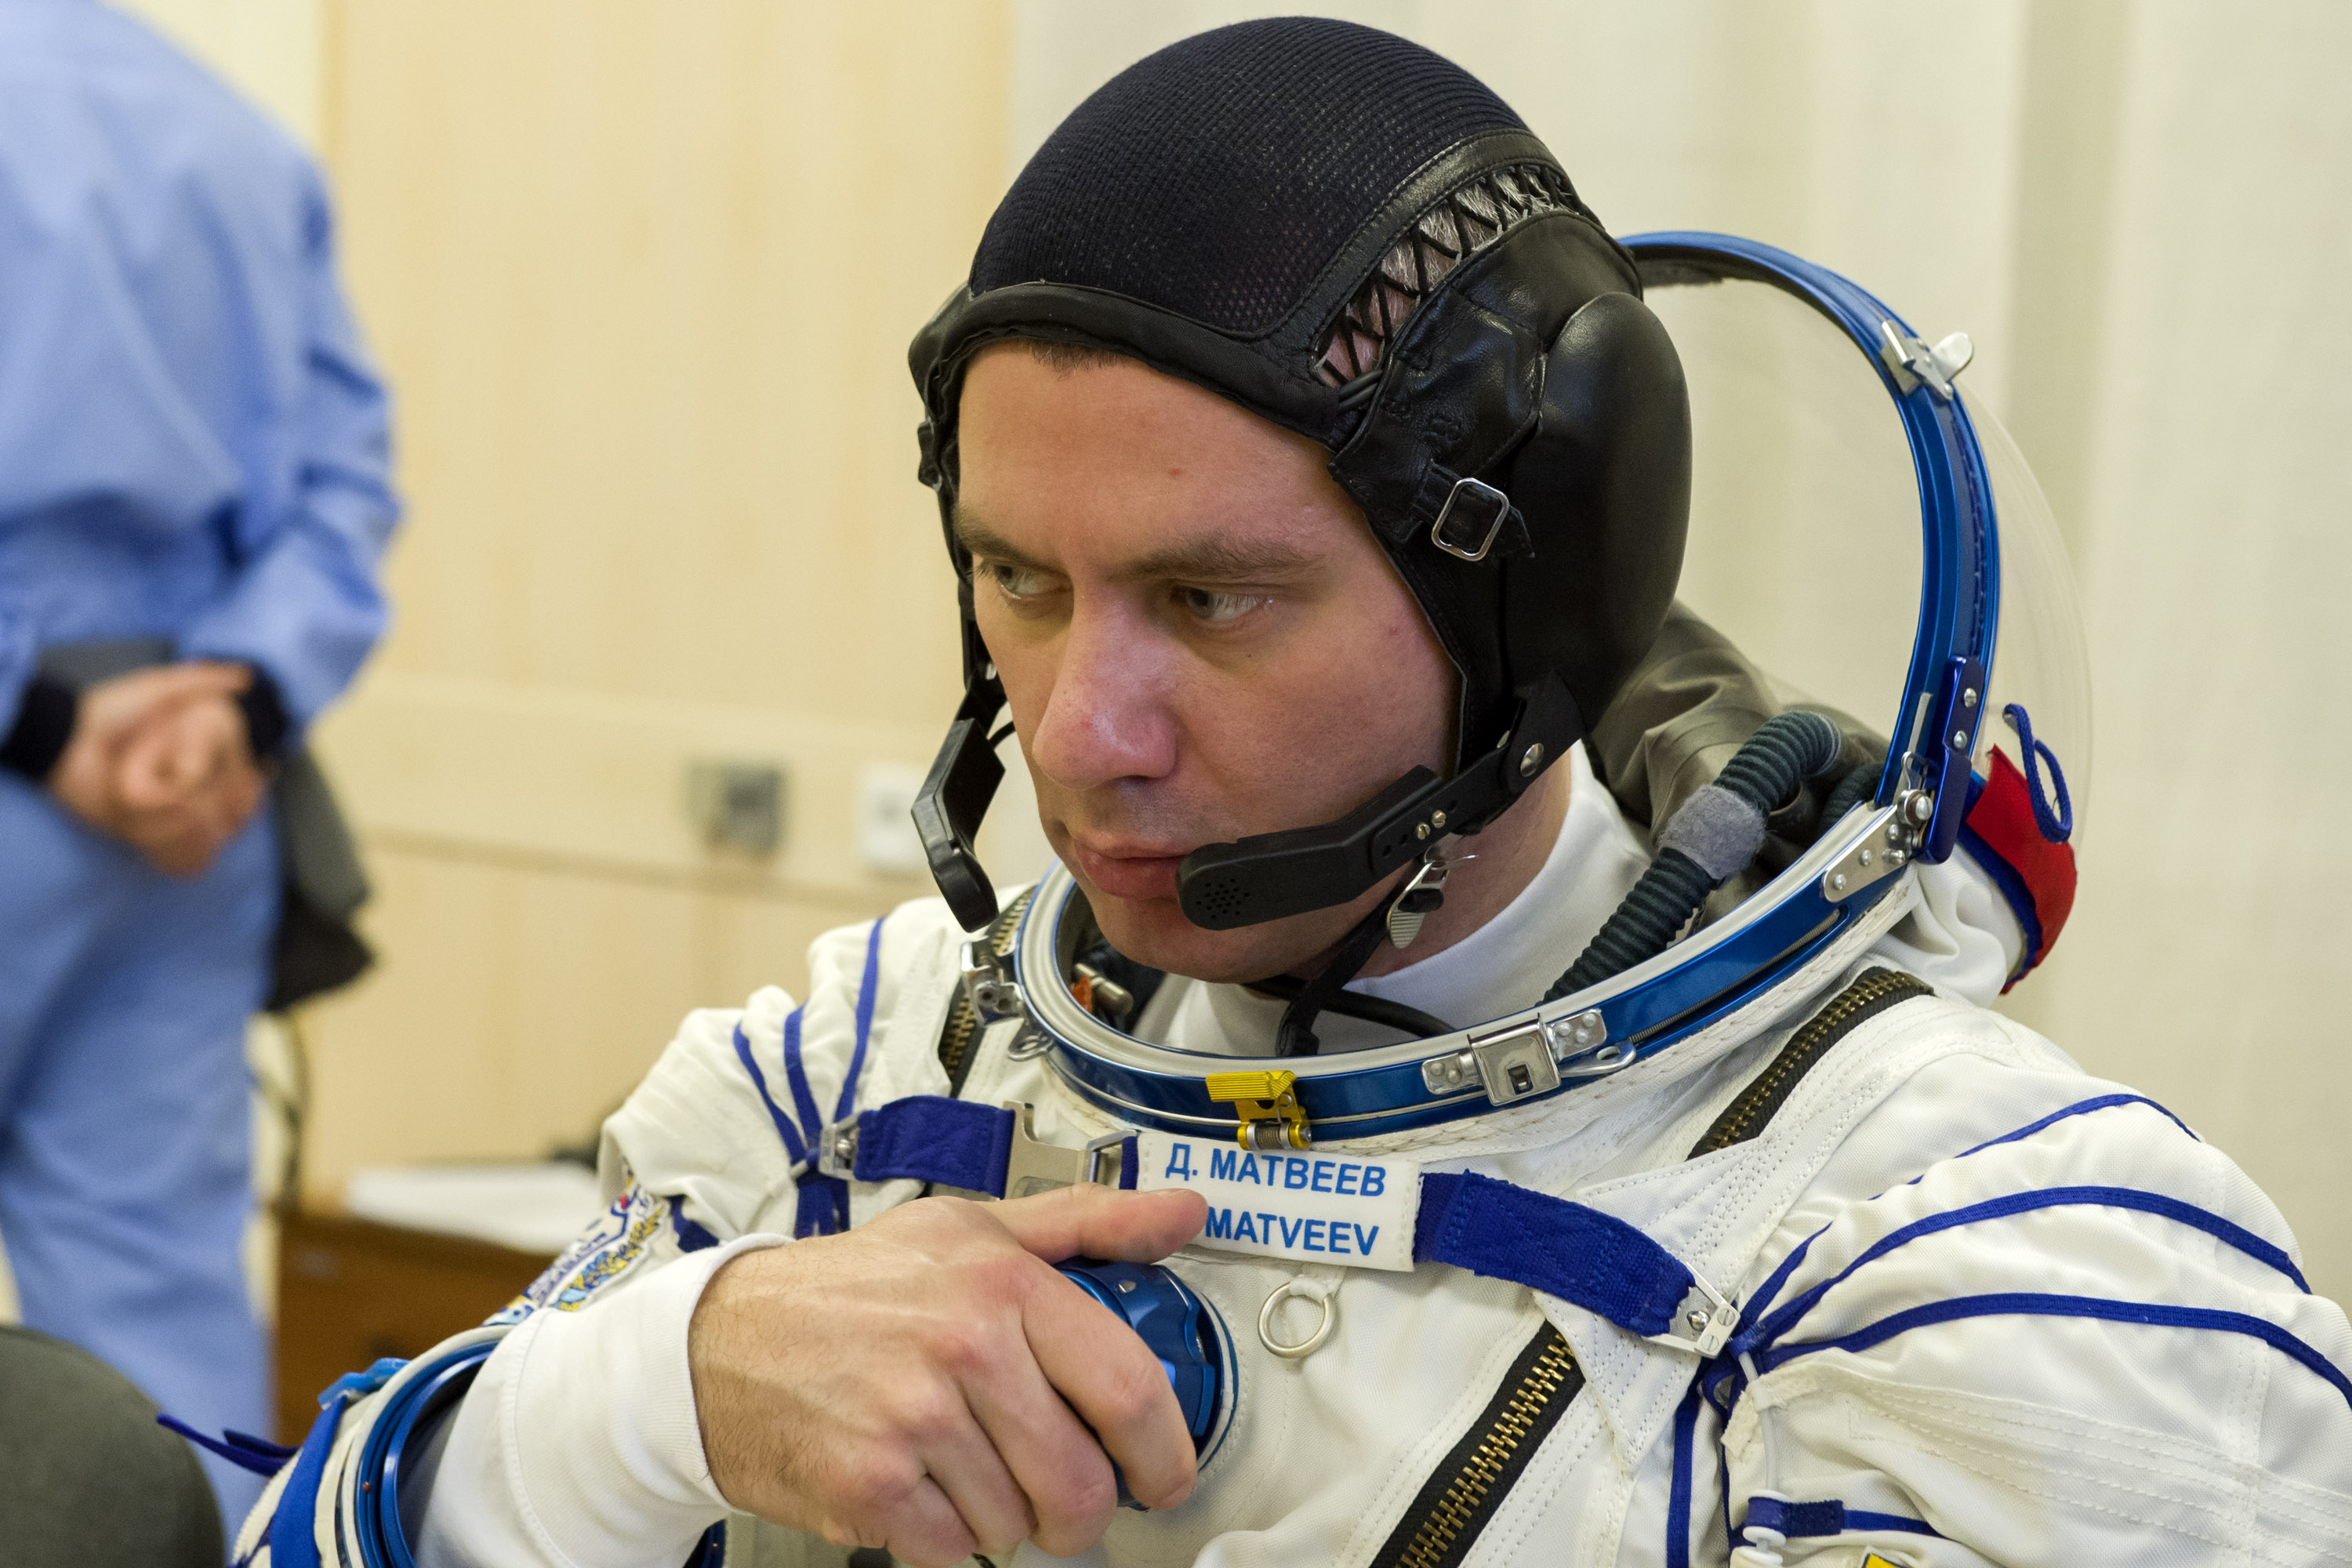 Фамилия космонавта вышедшего в открытый космос. Выход Леонова в открытый космос. Фото Космонавта Матвеева.